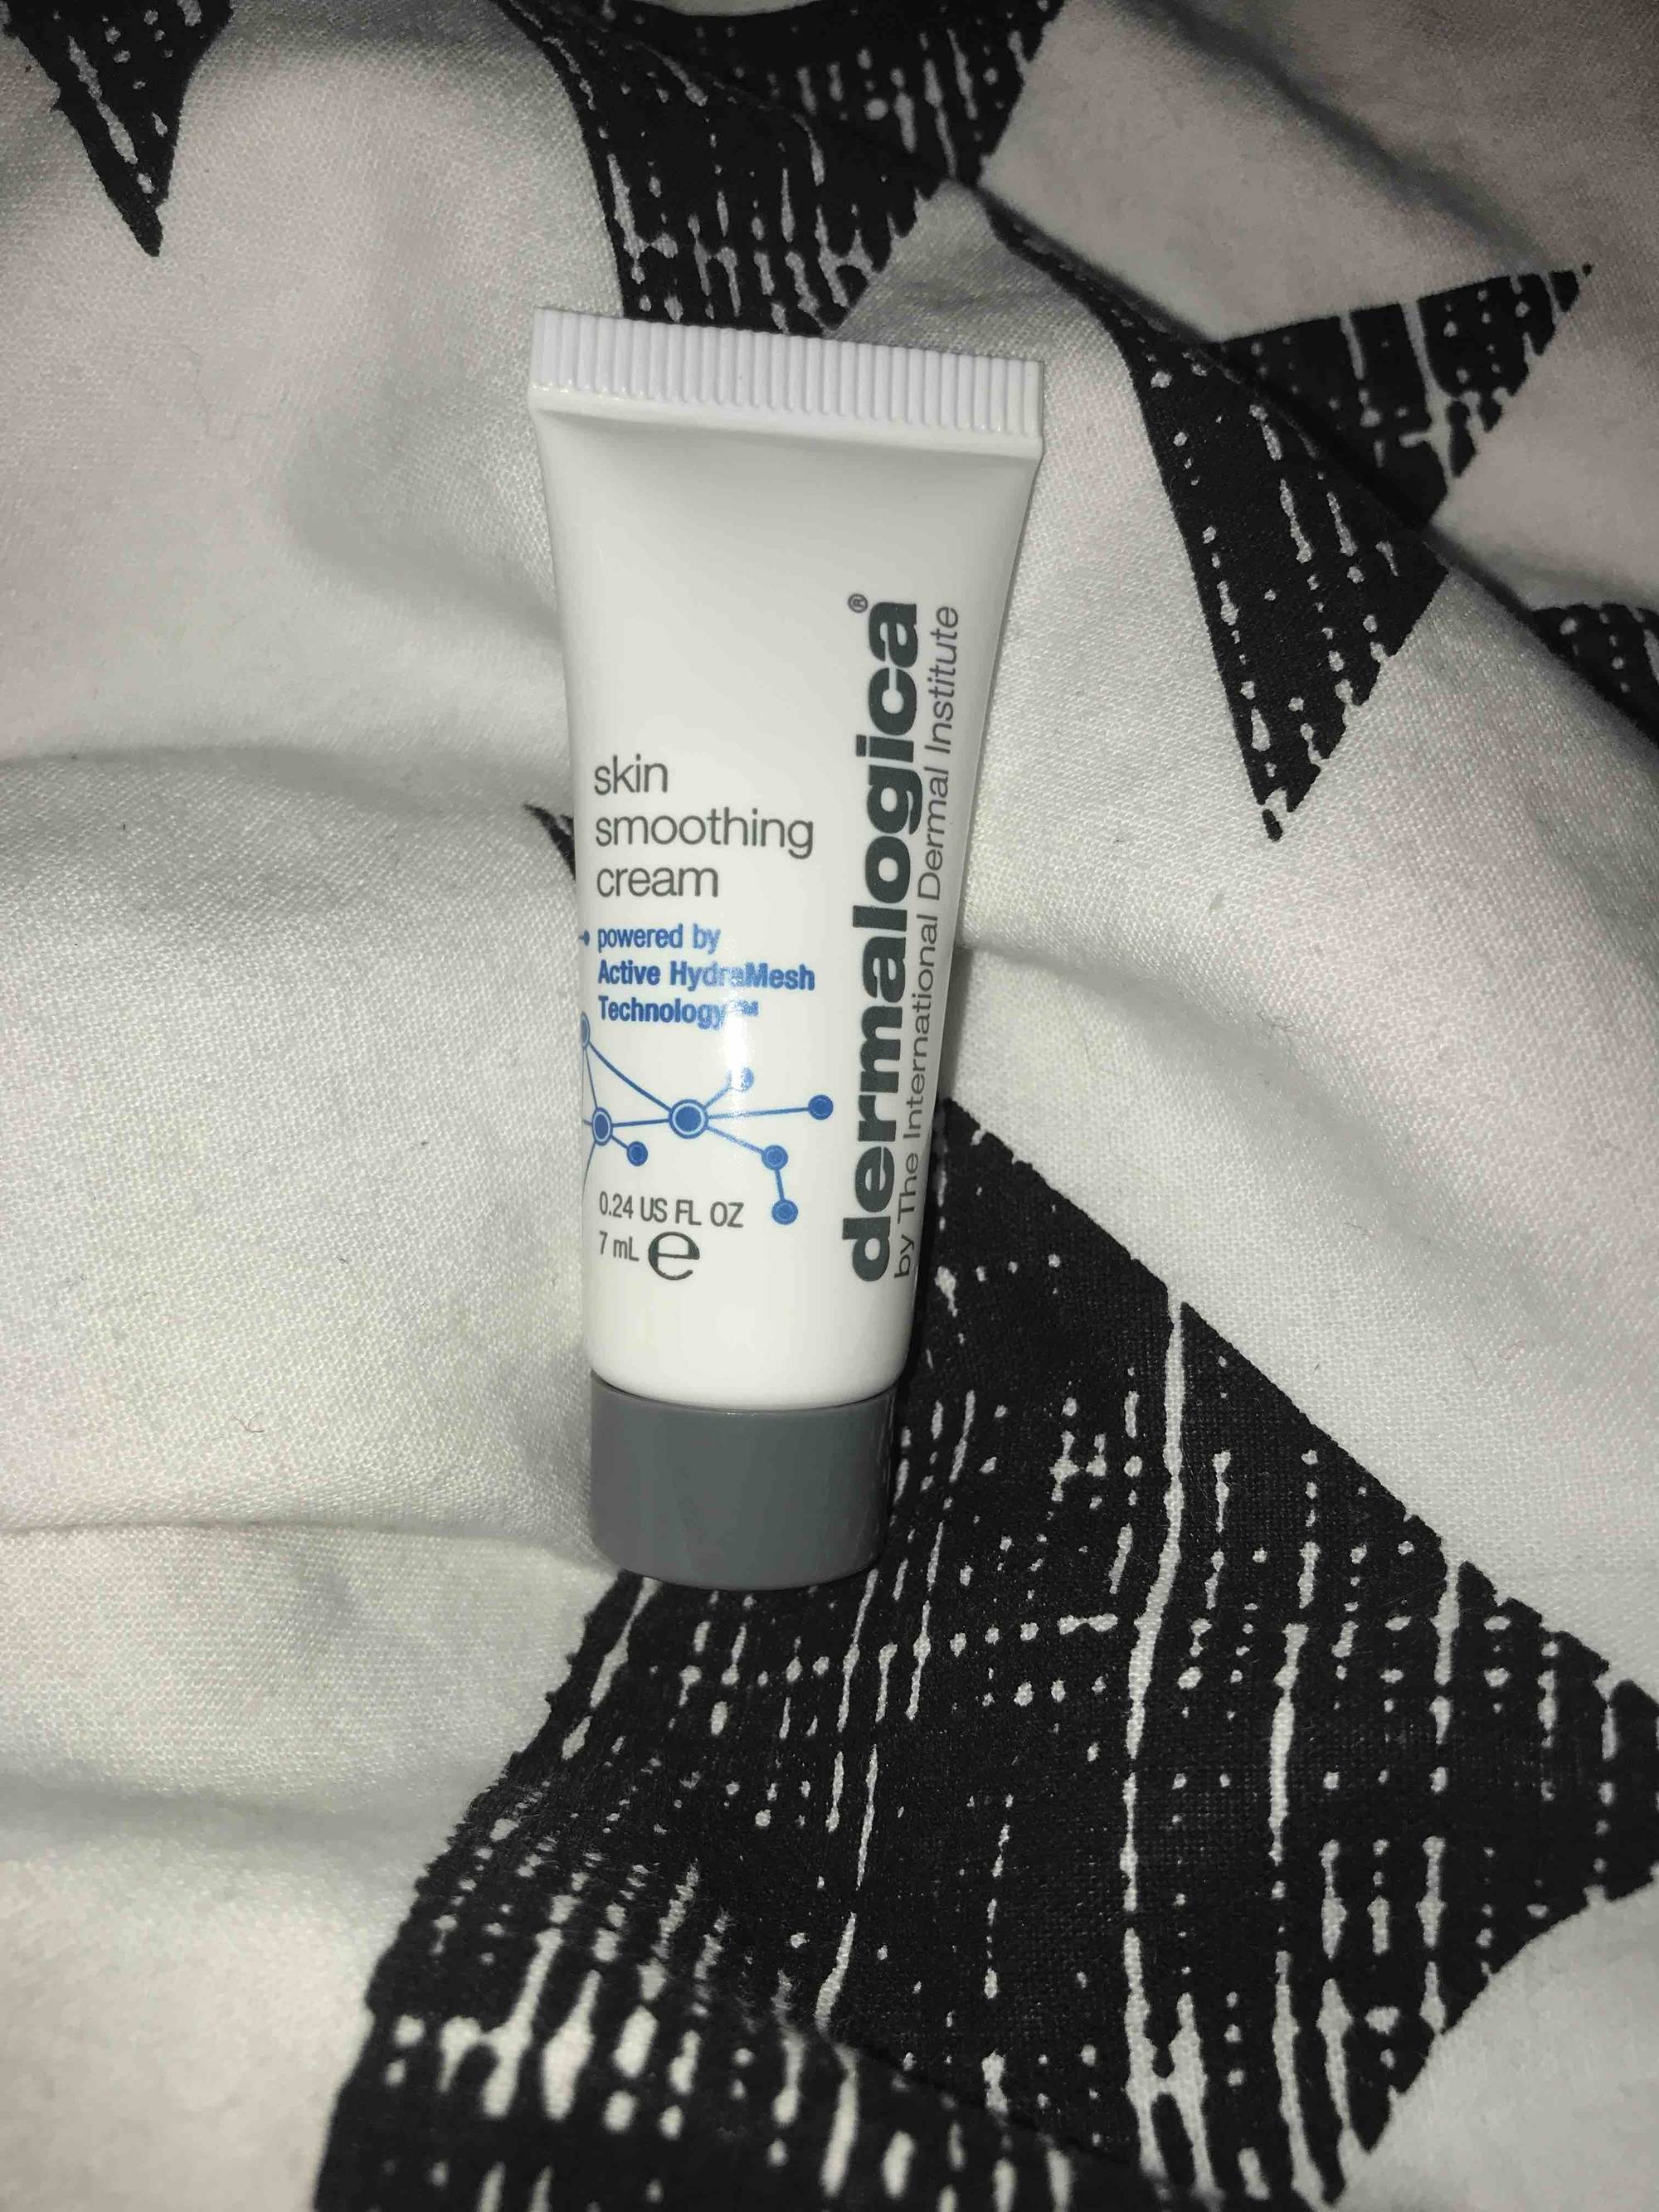 DERMALOGICA - Skin smoothing cream